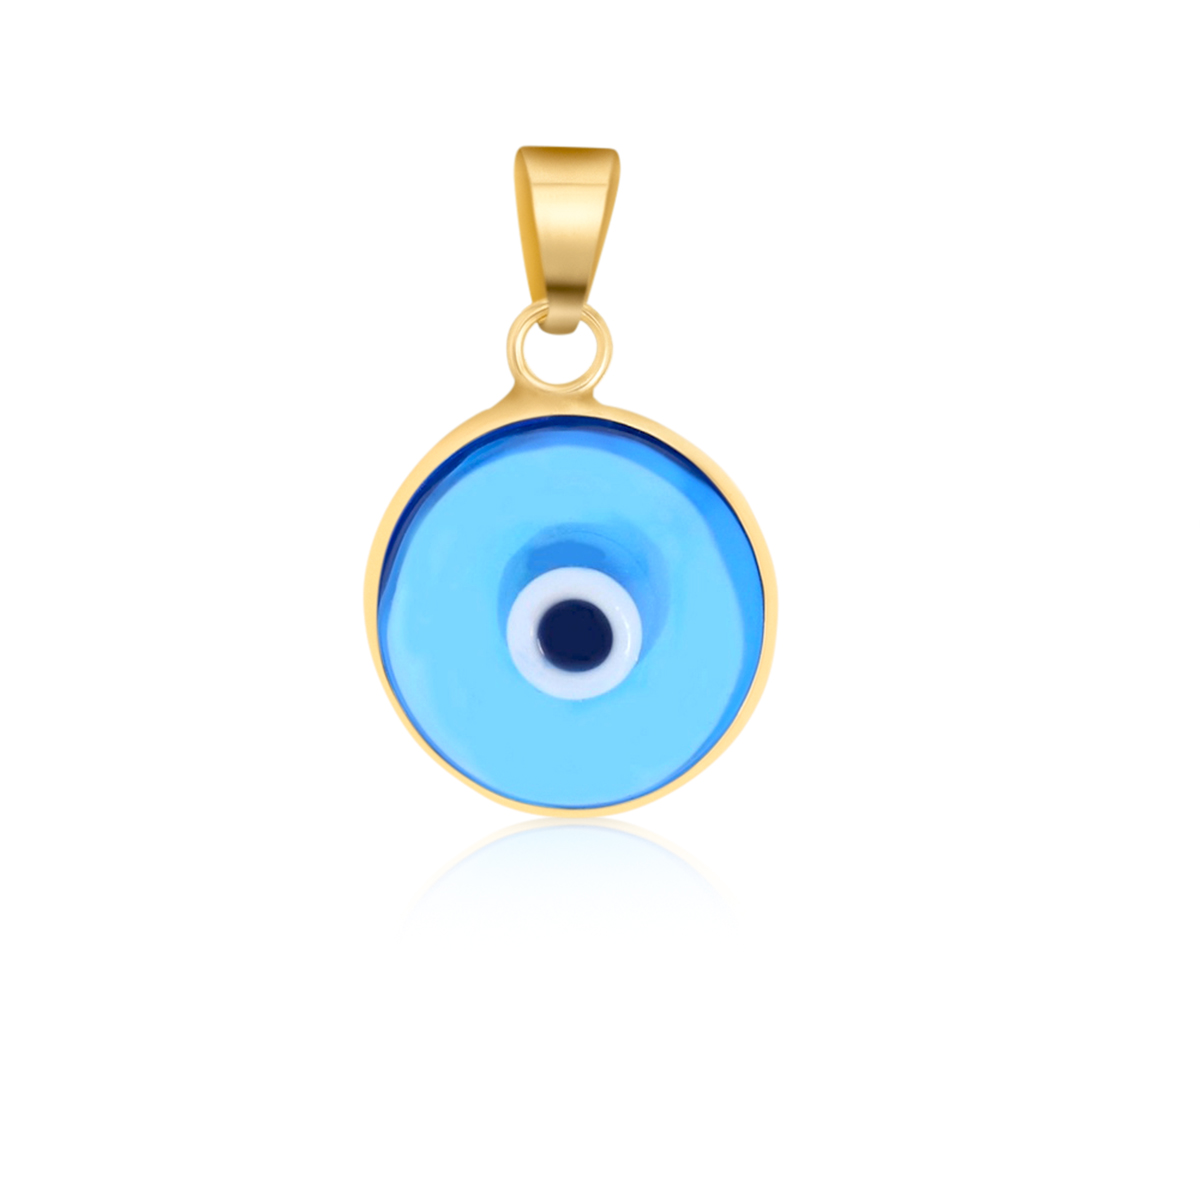 Goldanhänger blaues Auge in 585 Gelbgold 8002 jetzt online